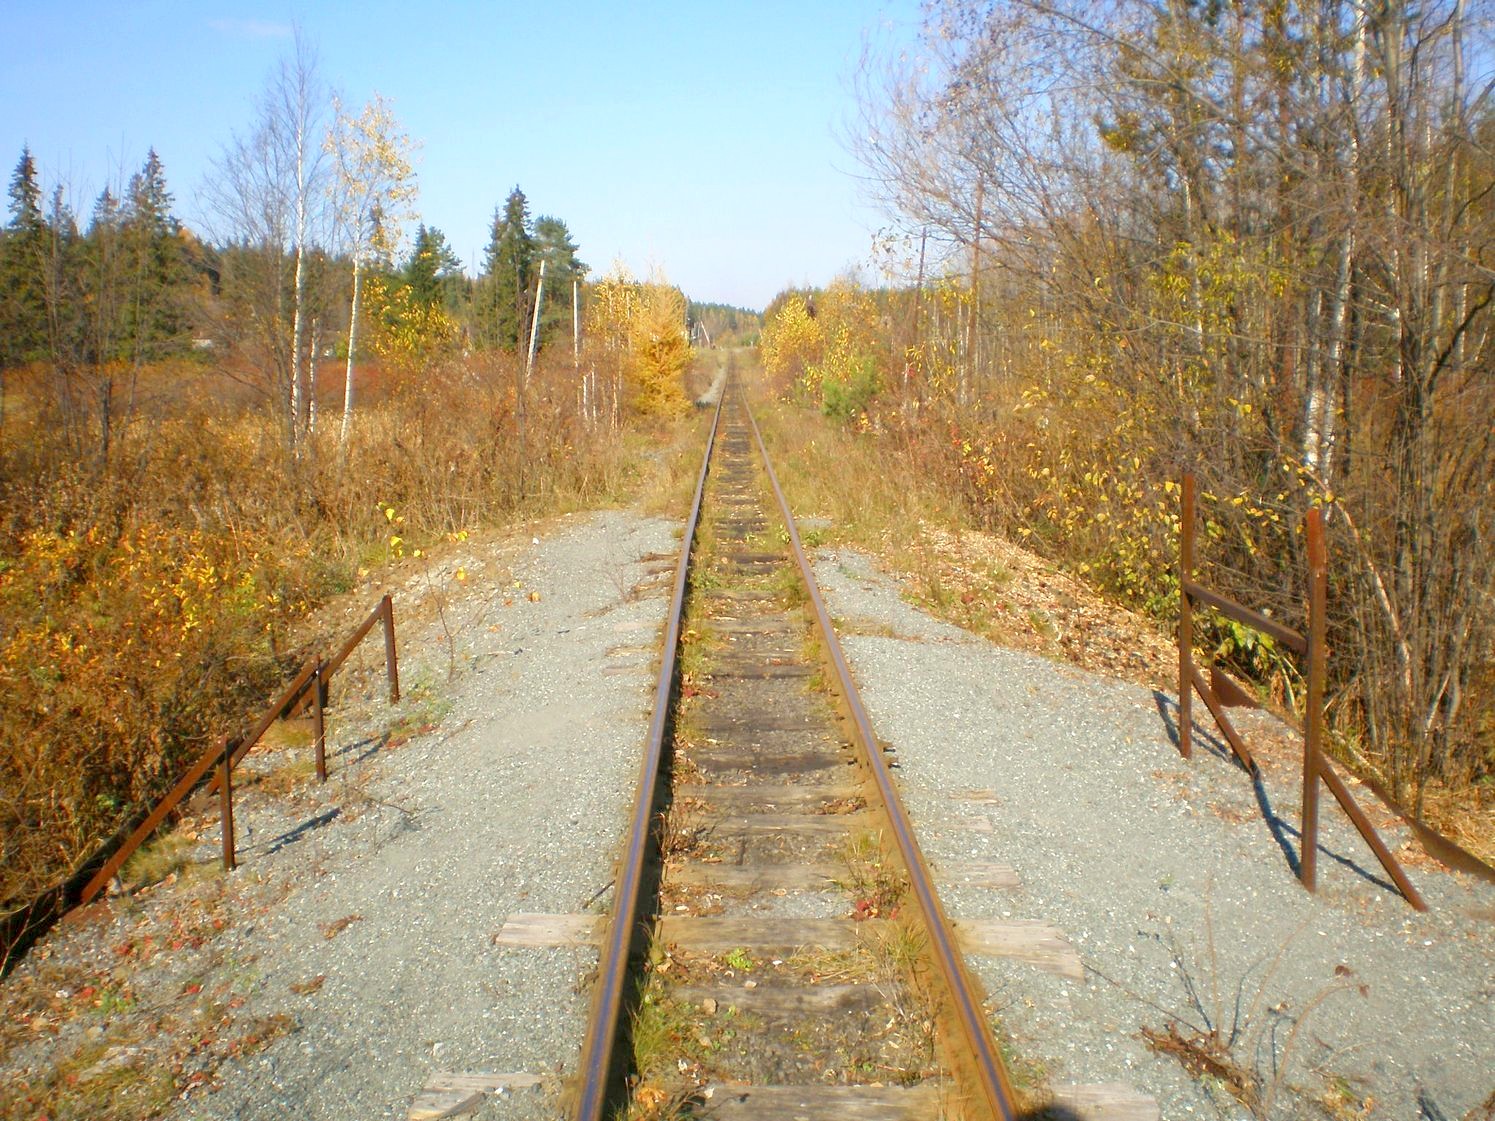 Висимо-Уткинская узкоколейная железная дорога  — фотографии, сделанные в 2007 году (часть 27)